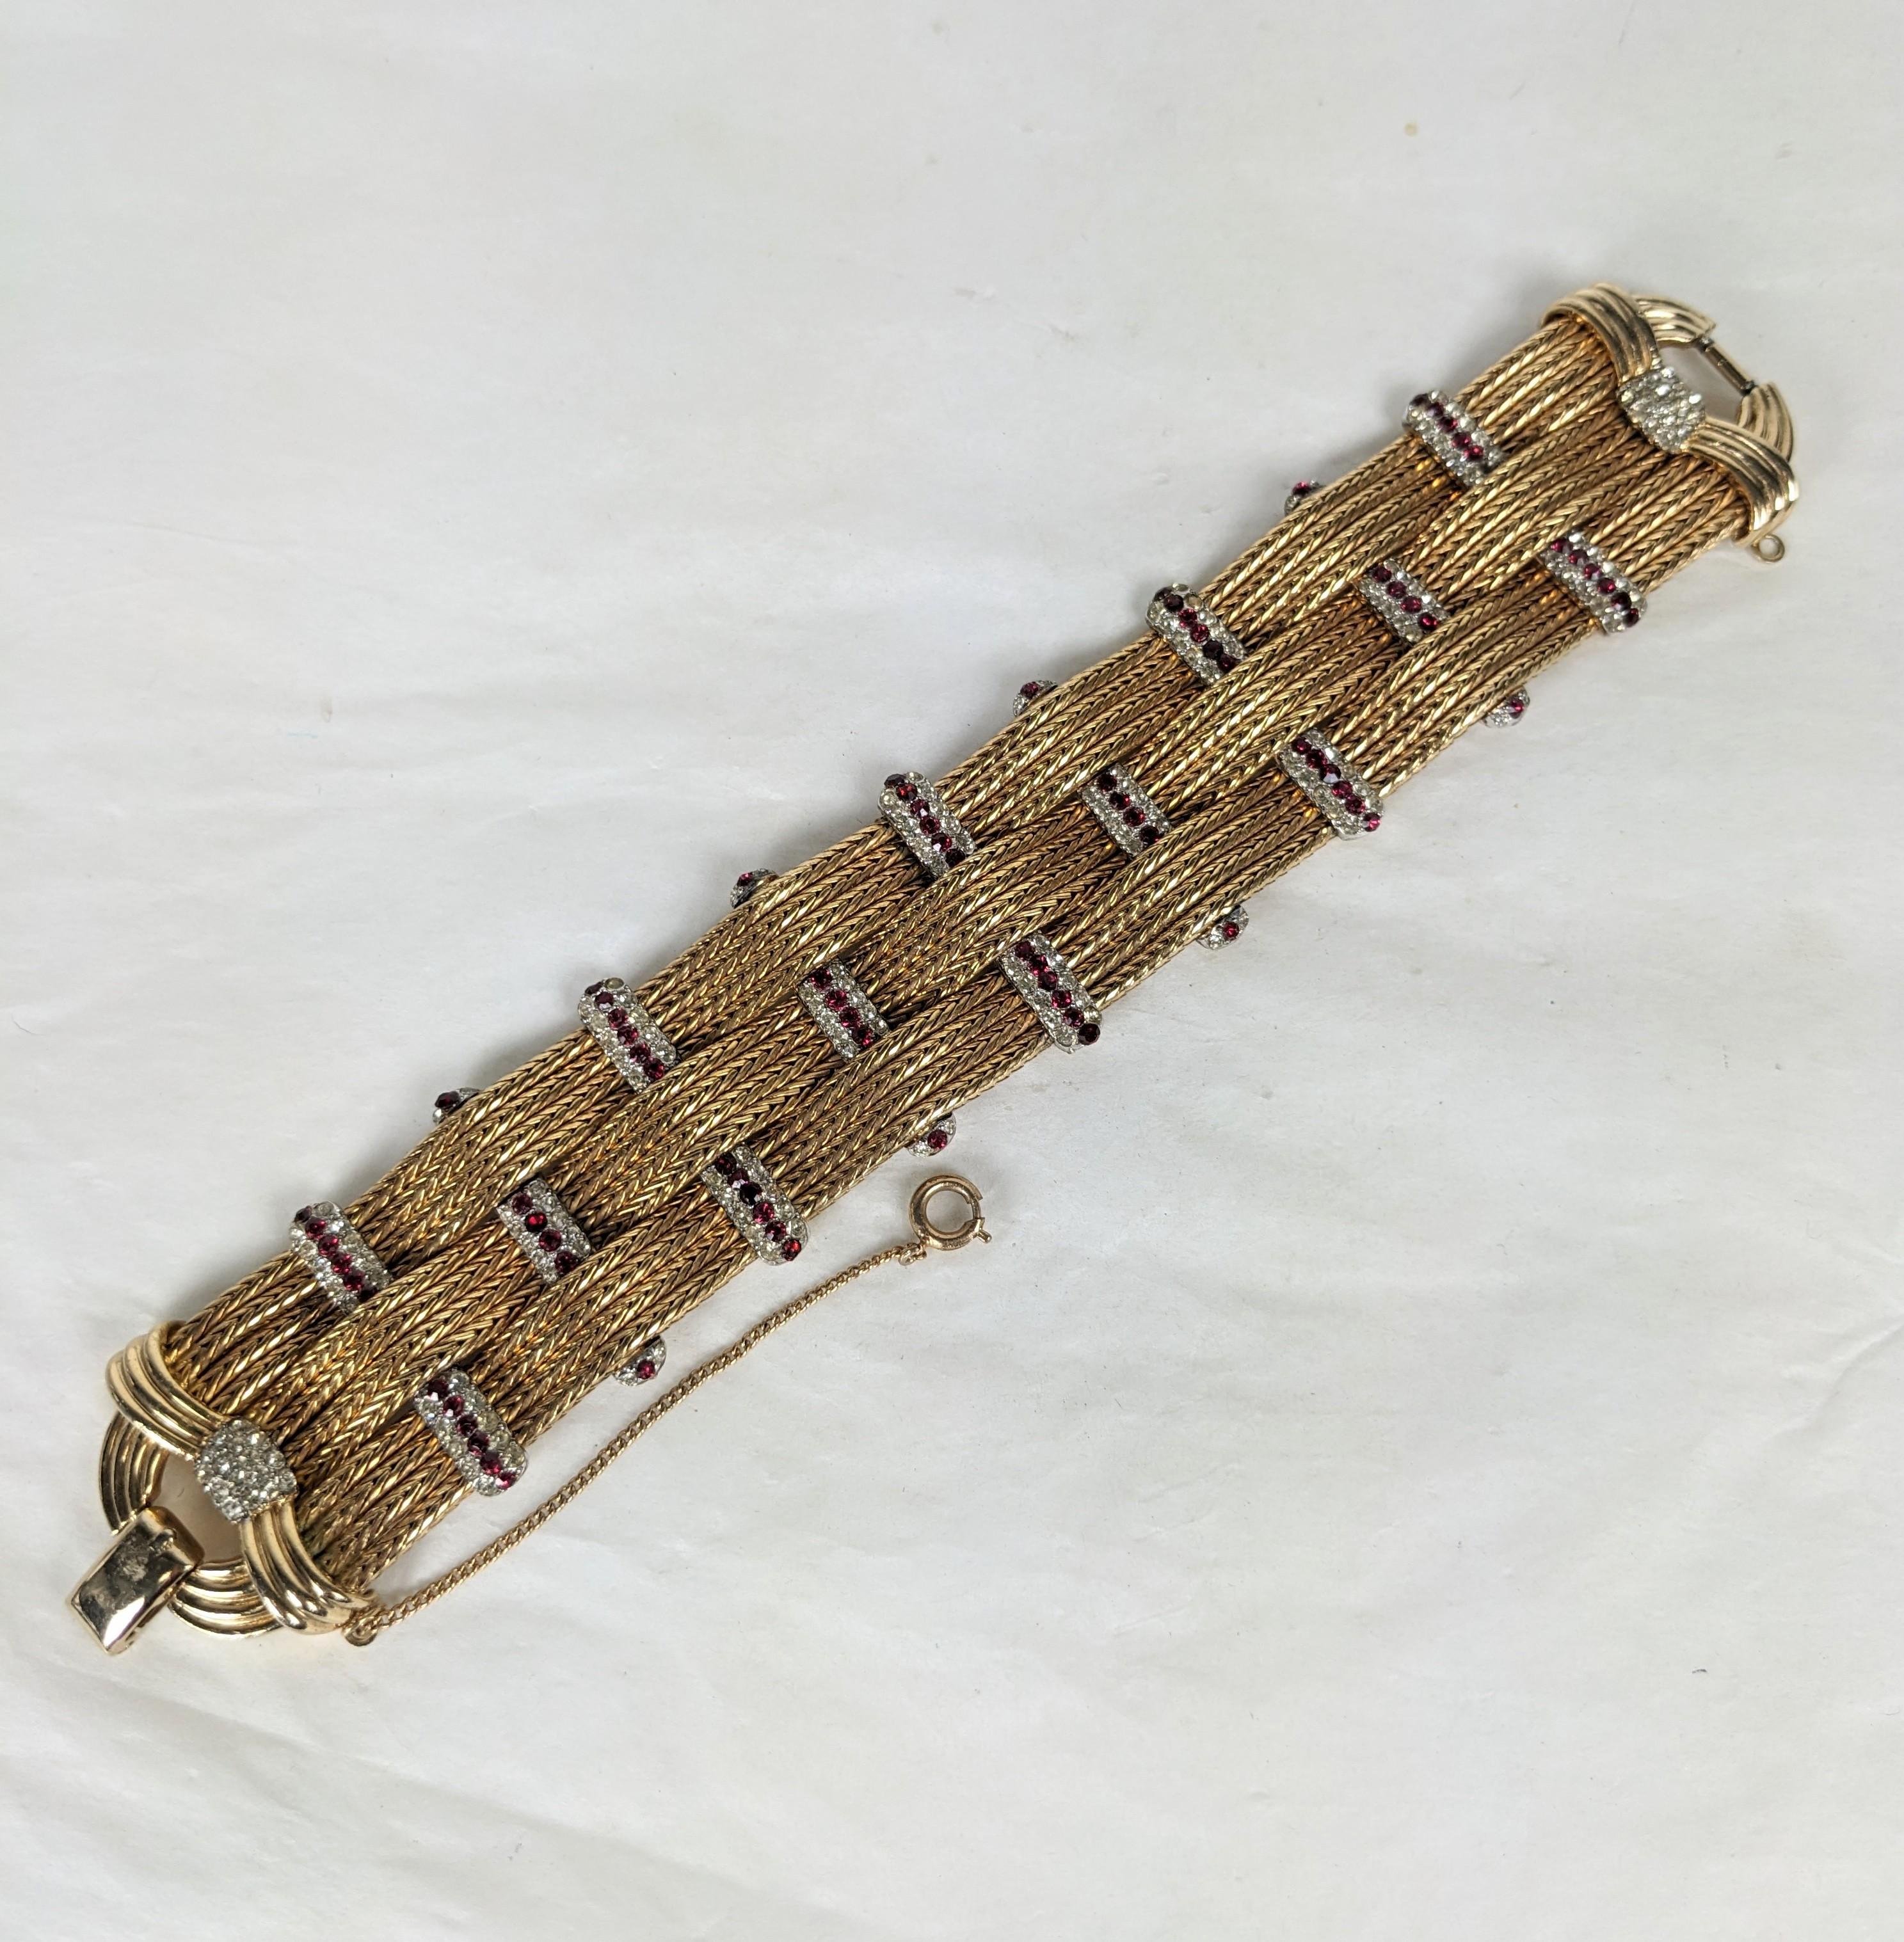 Bracelet de station Marcel Boucher en or pavé et côtelé des années 1950. Elegant design de chaînes d'or nervurées entrelacées de pavés de cristal et de pierres de rubis. 7